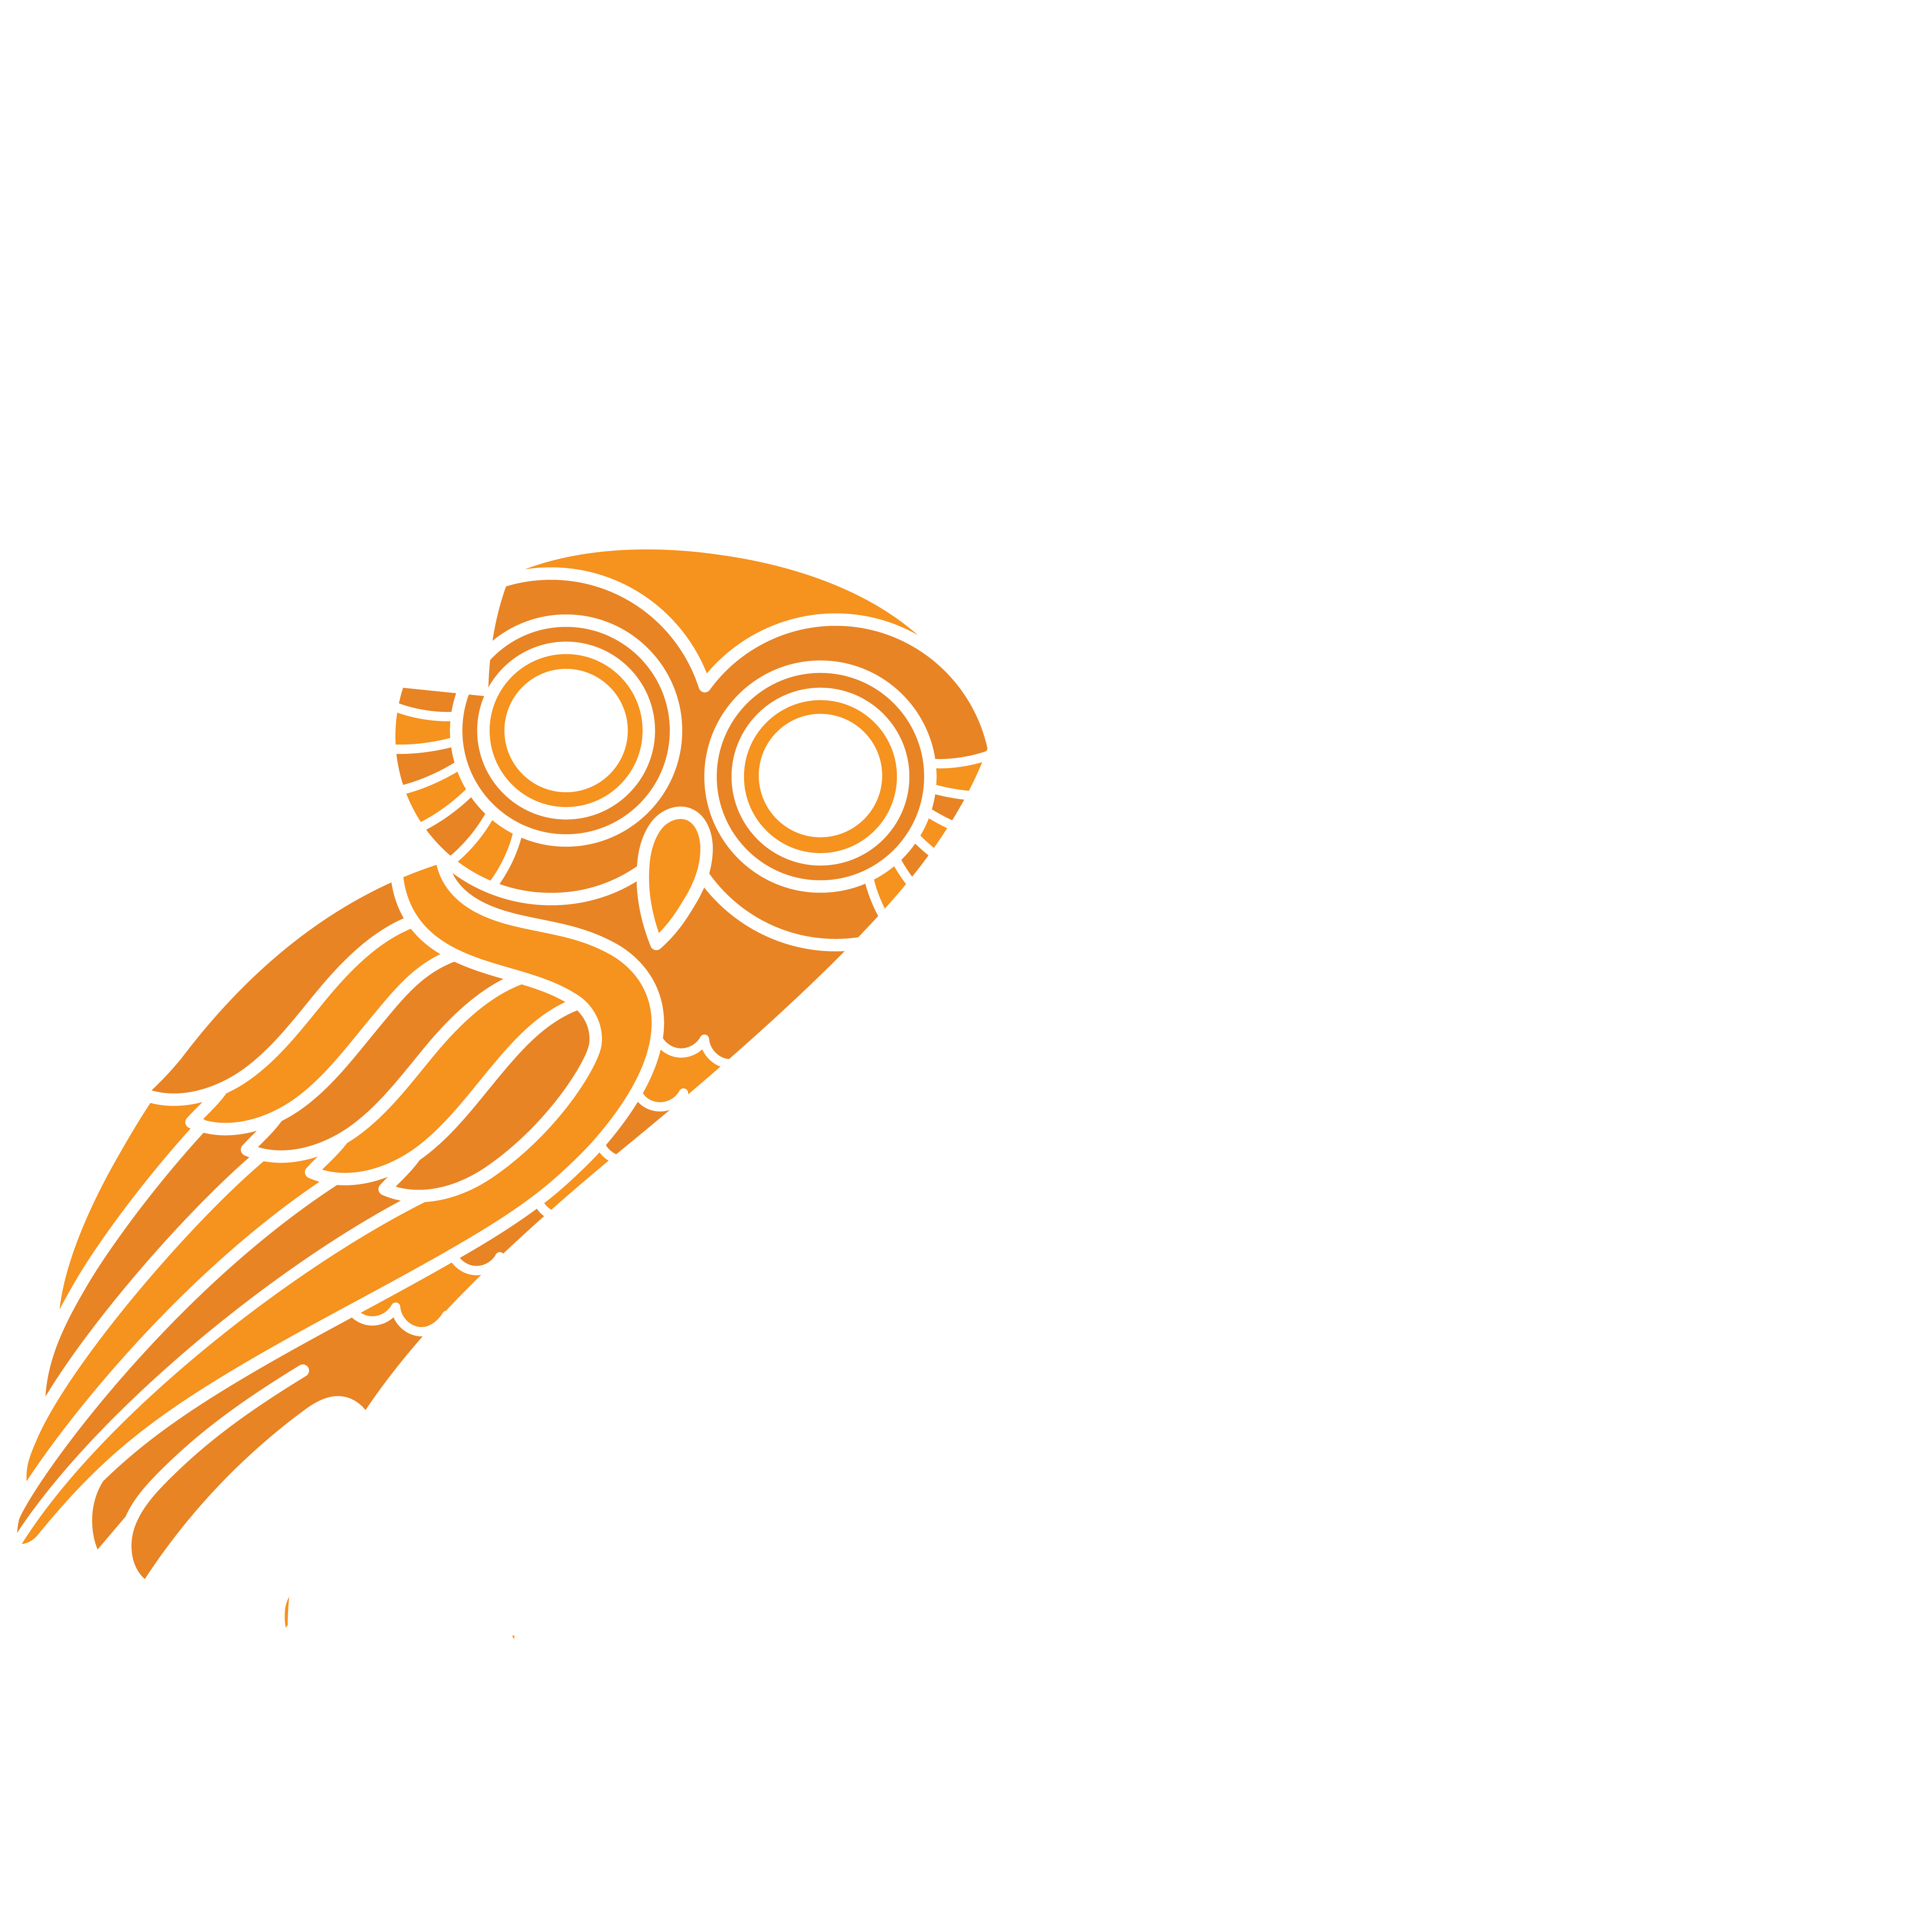 20 Years of UCHI